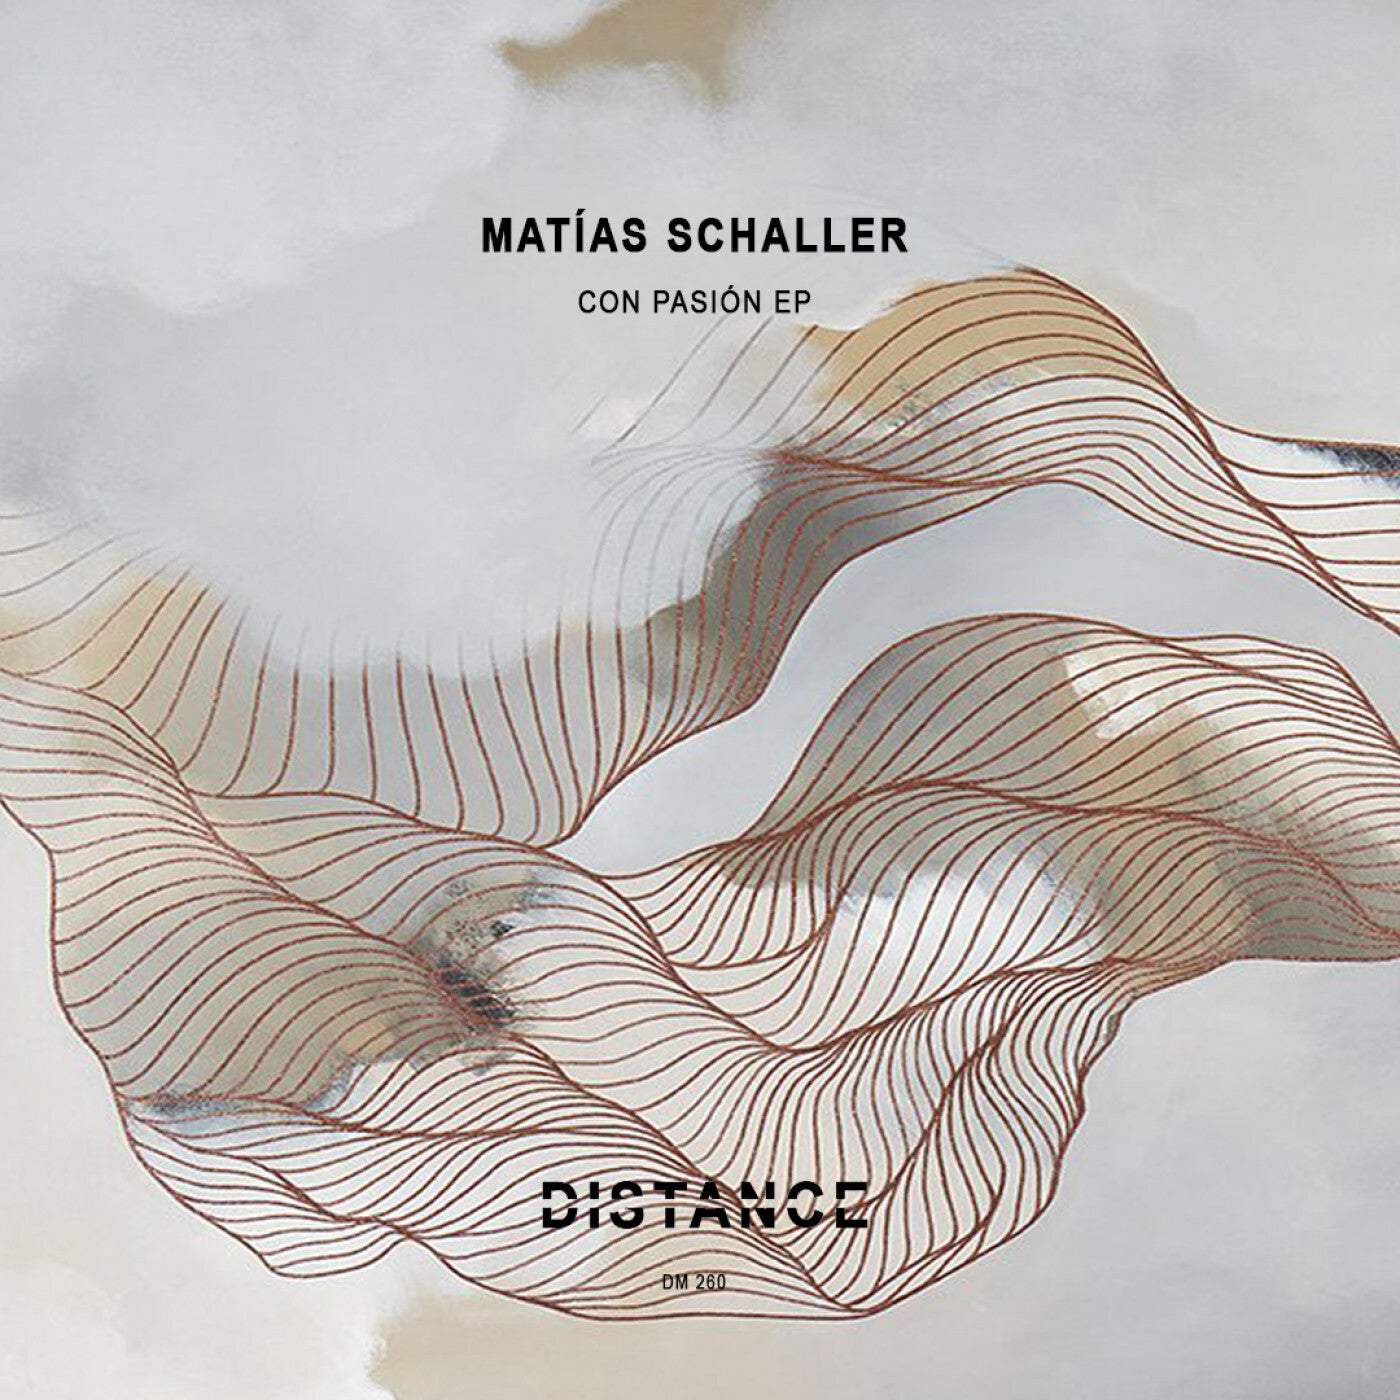 Download Matías Schaller - Con Pasión EP on Electrobuzz